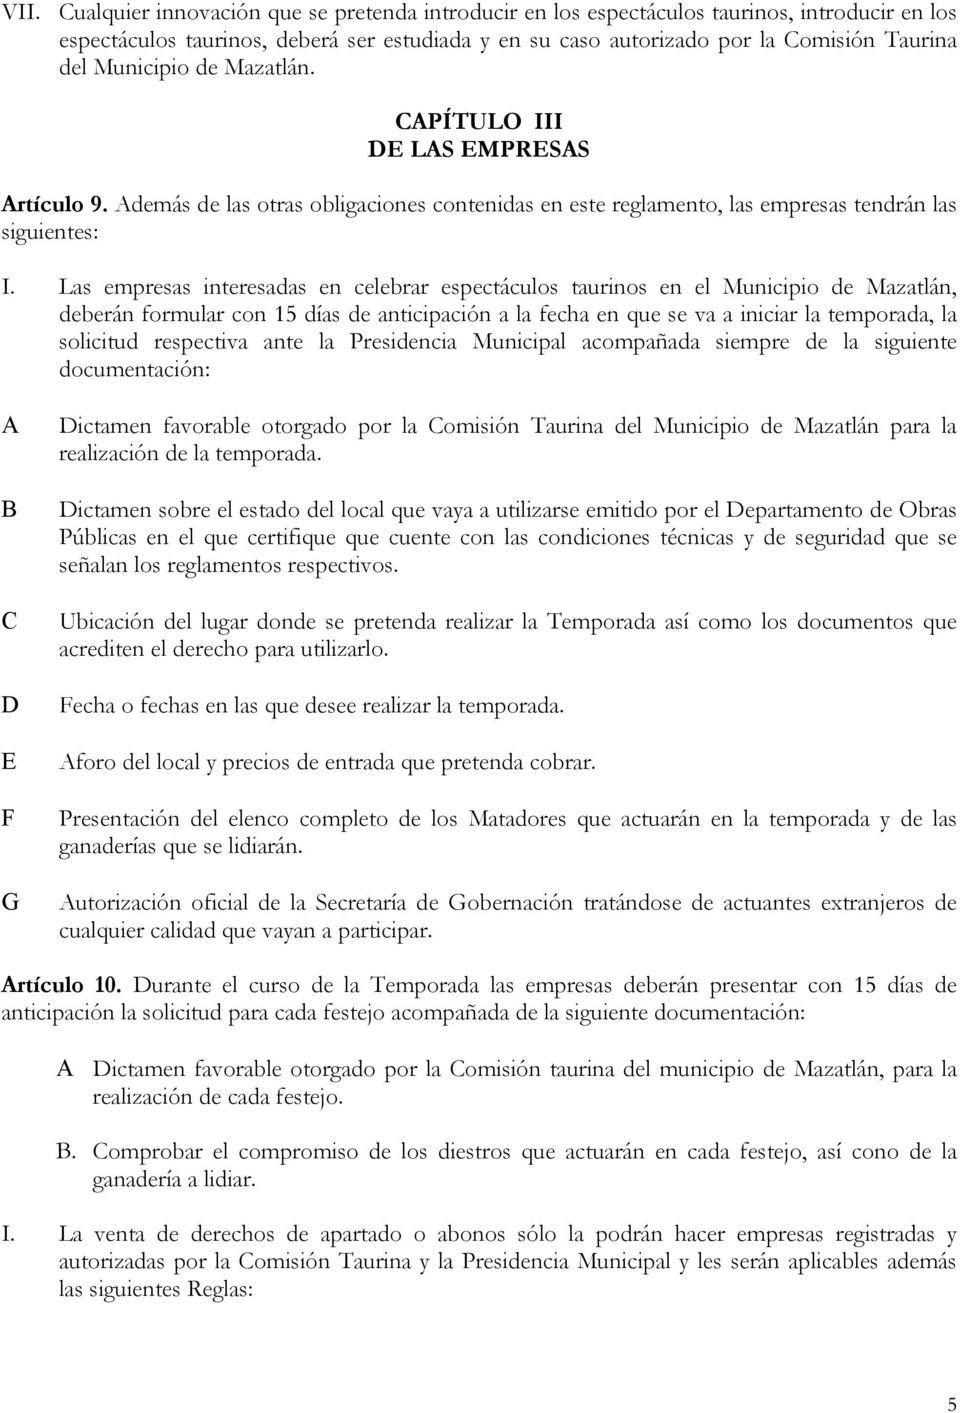 Las empresas interesadas en celebrar espectáculos taurinos en el Municipio de Mazatlán, deberán formular con 15 días de anticipación a la fecha en que se va a iniciar la temporada, la solicitud